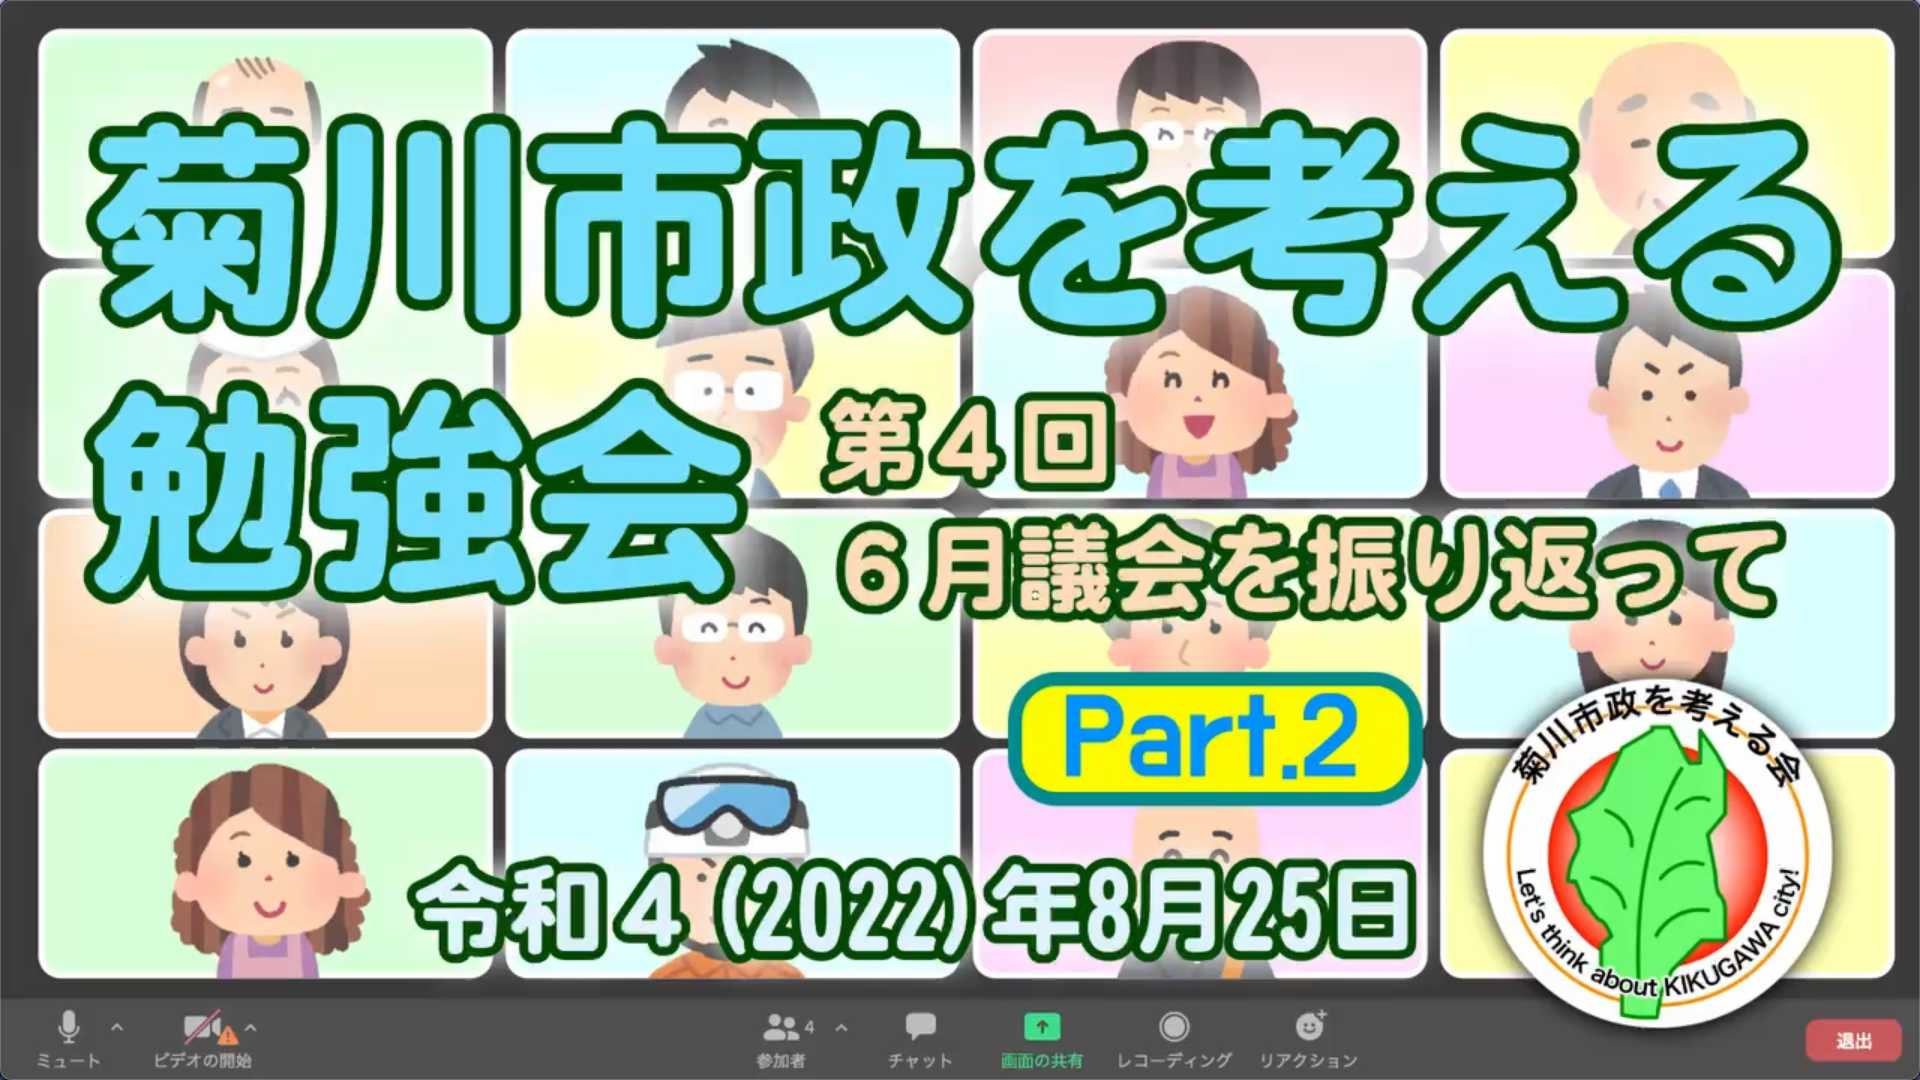 2022-09-25 【菊川市政を考える勉強会 #4 Part.2】(2022-08-25)｜YouTubeサムネイル